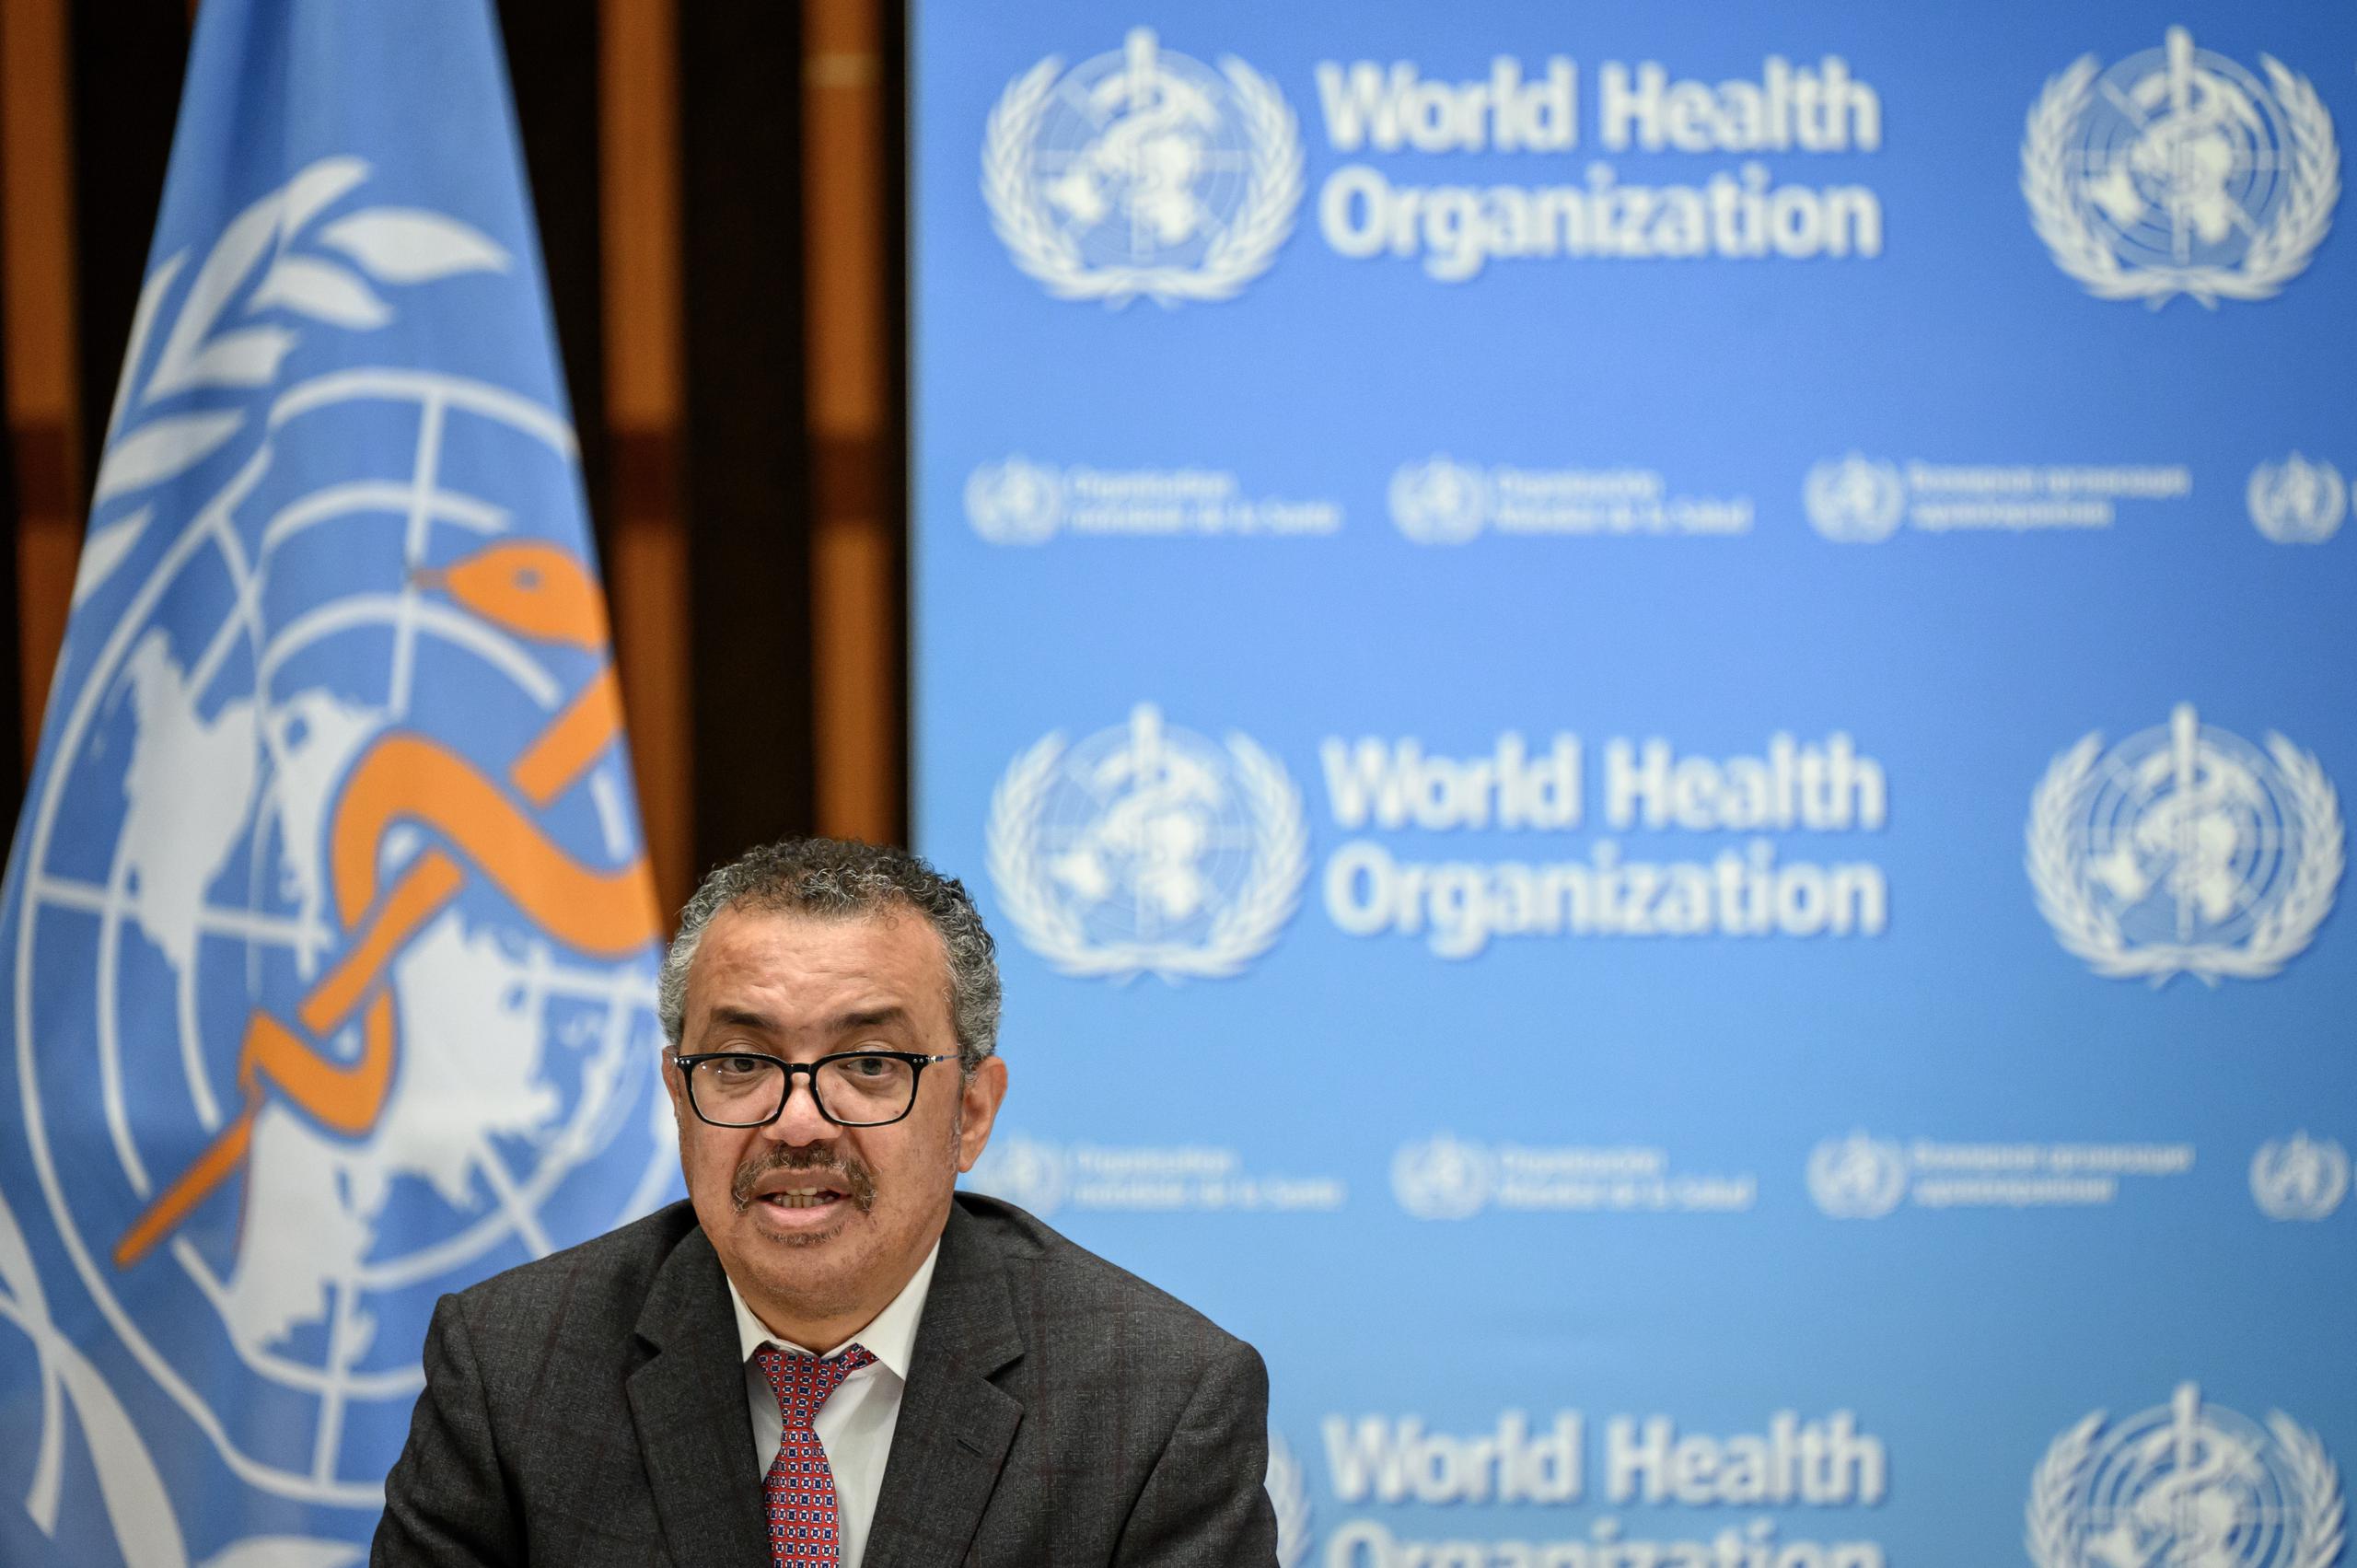 El director general de la OMS, Tedros Adhanom Ghebreyesus, convocó el jueves al comité de emergencia tras manifestar su preocupación sobre la epidemia.